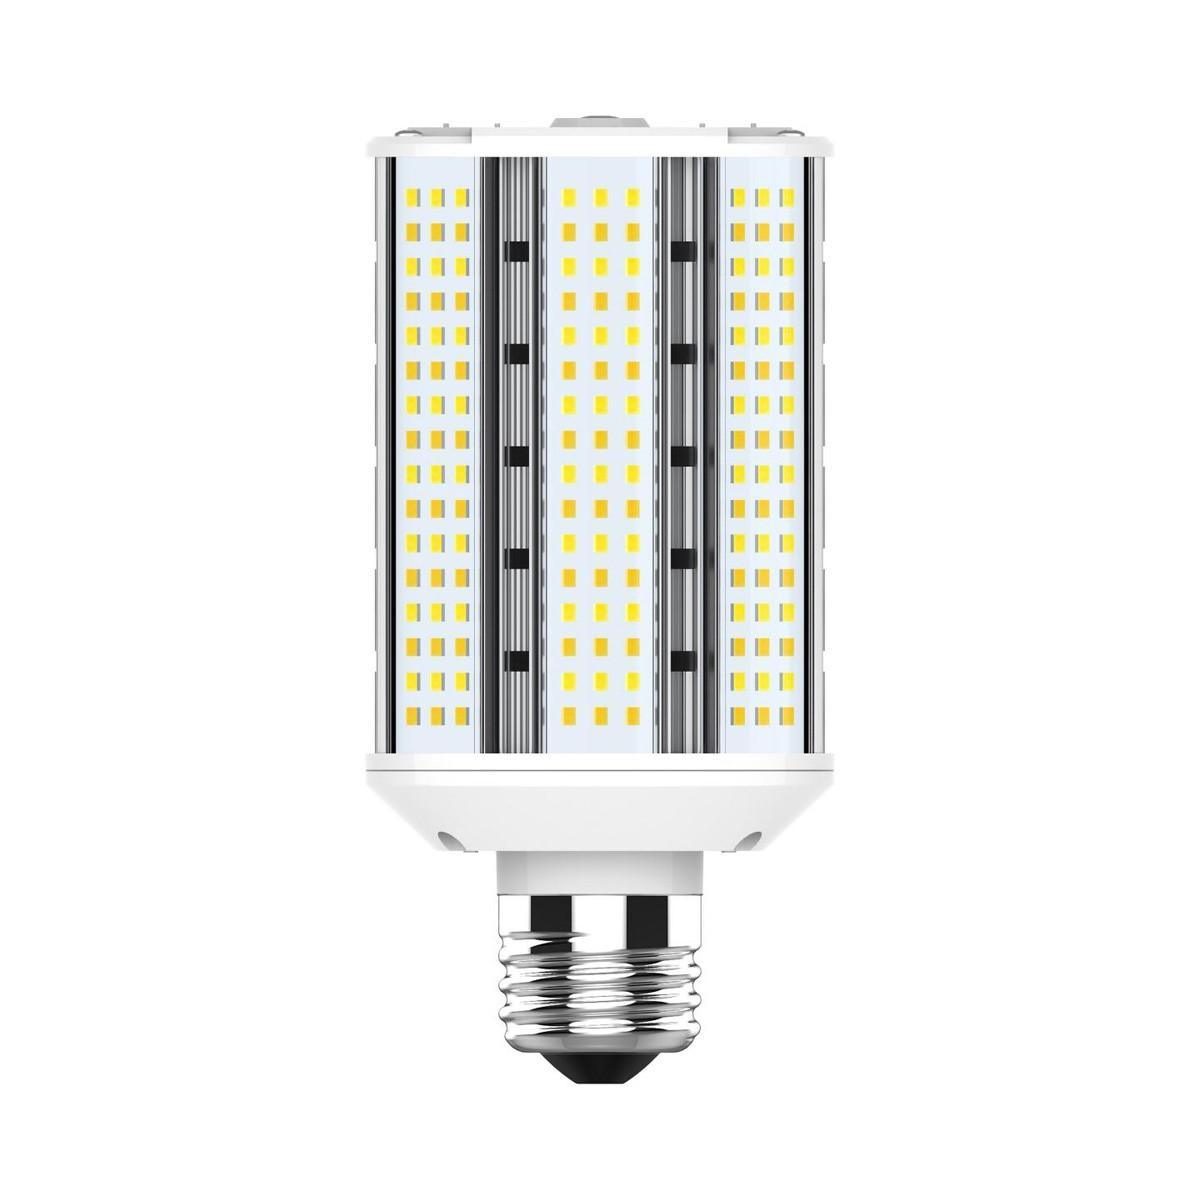 Hi-Pro Wall Pack/Shoebox LED Retrofit Lamp, 30W, 4500 Lumens, Selectable CCT, 30K/40K/50K, E26 Base, 120-277V - Bees Lighting